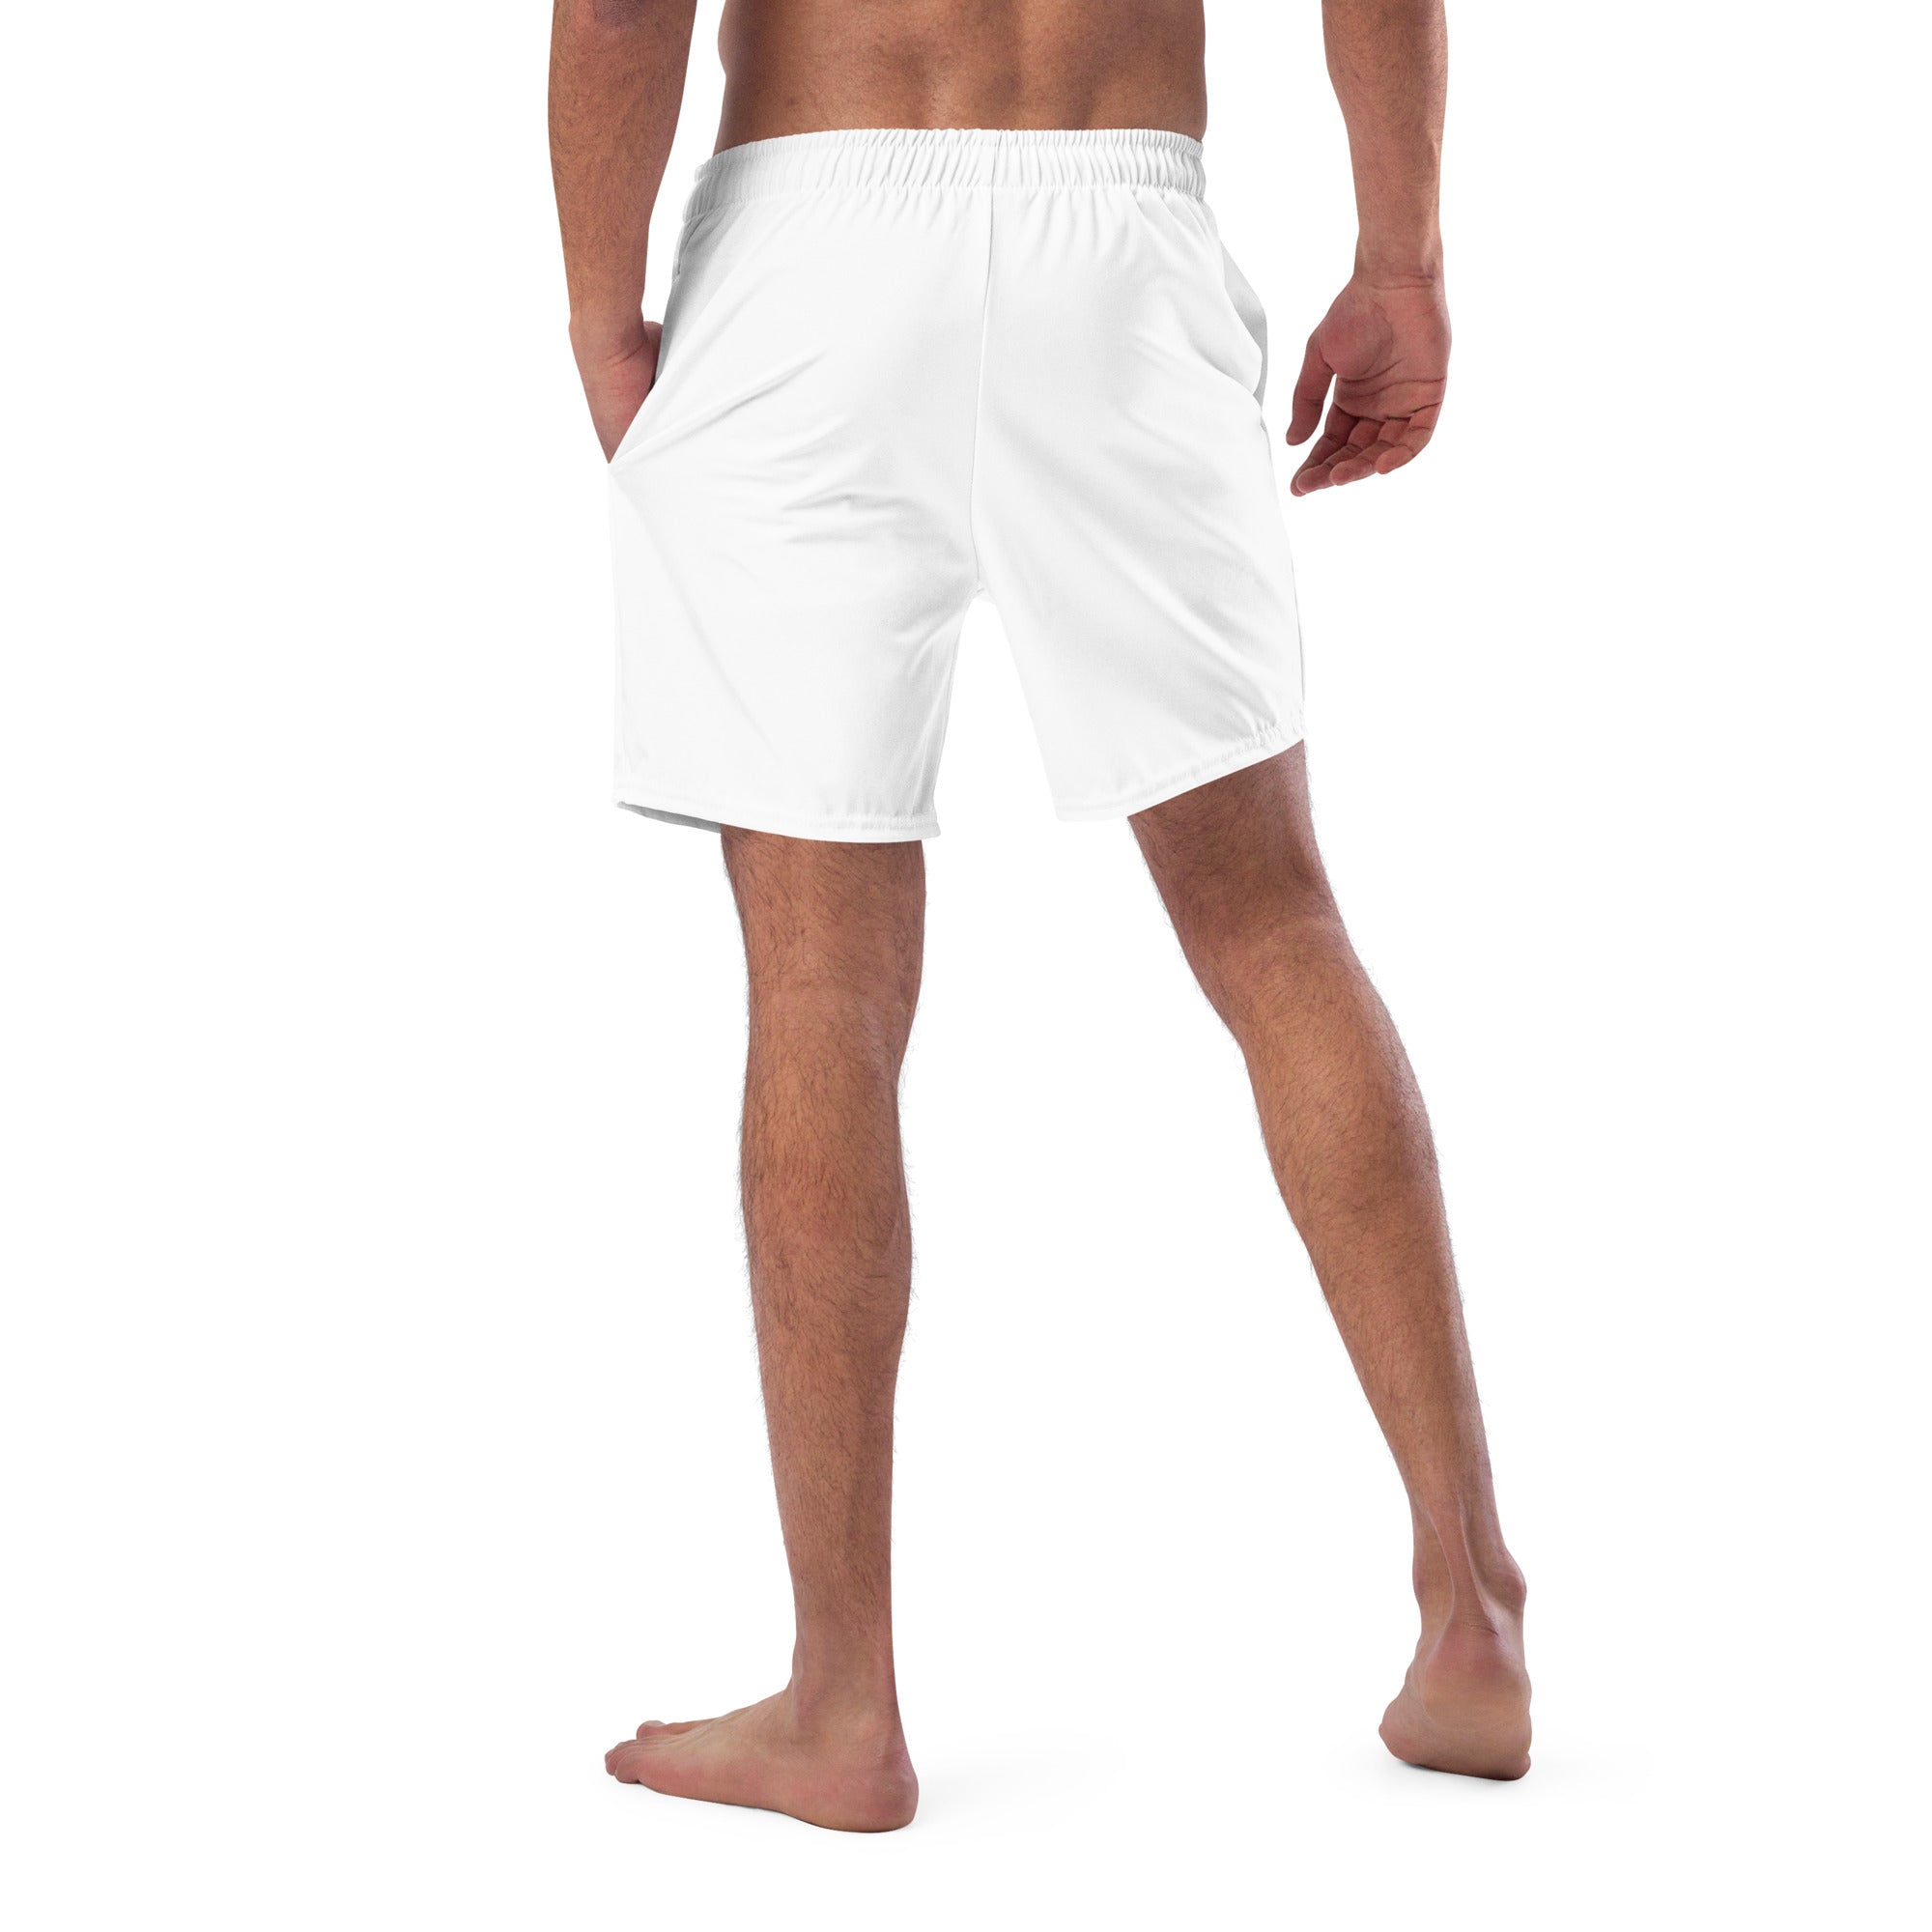 Challenge-sportswear - Men's swim trunks